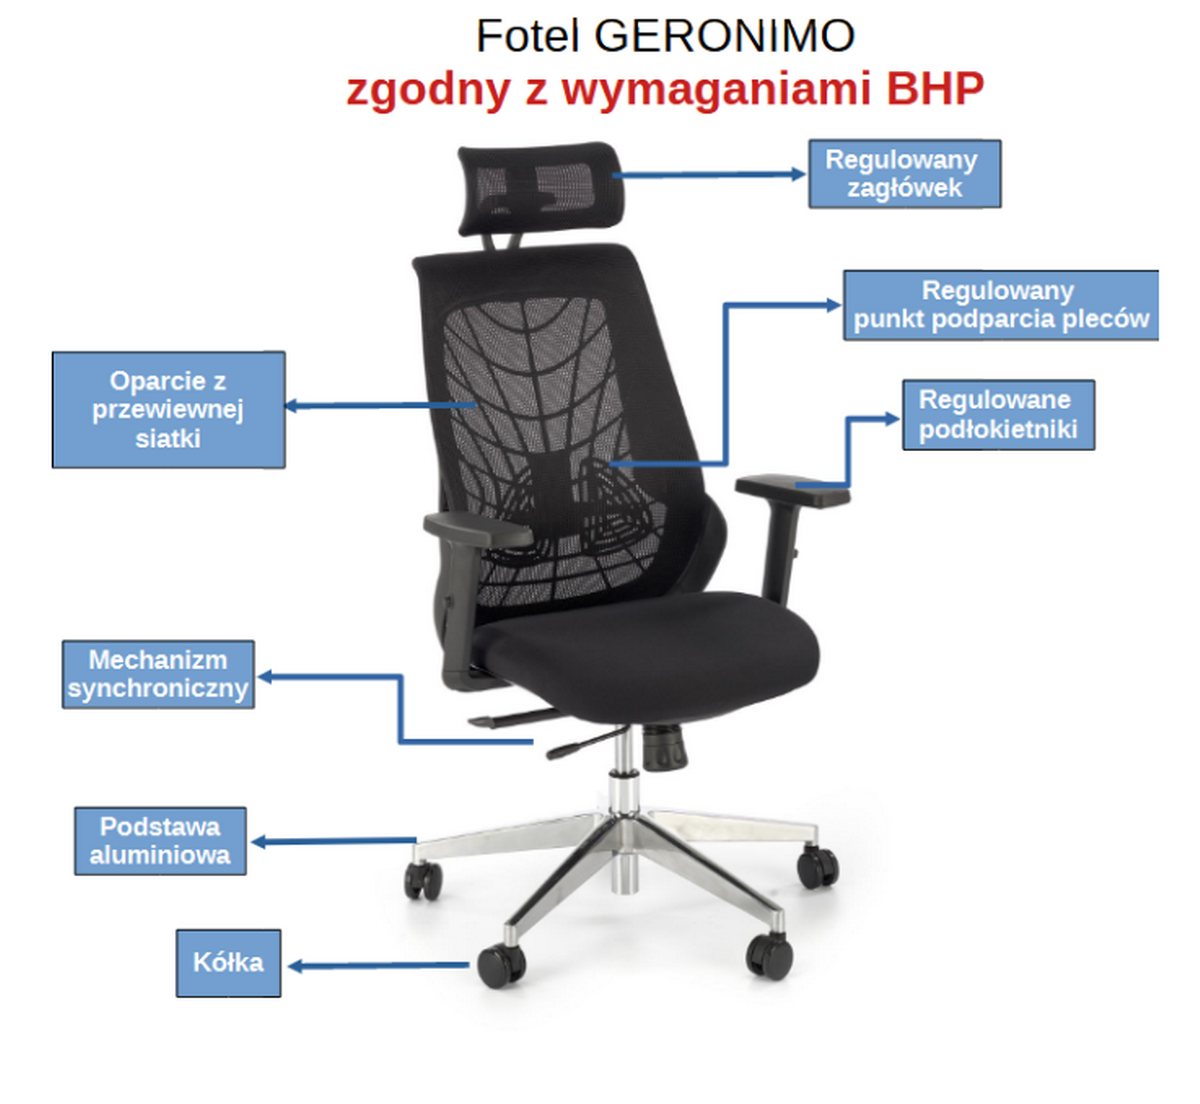 Fotel obrotowy zgodny z normami BHP GERONIMO